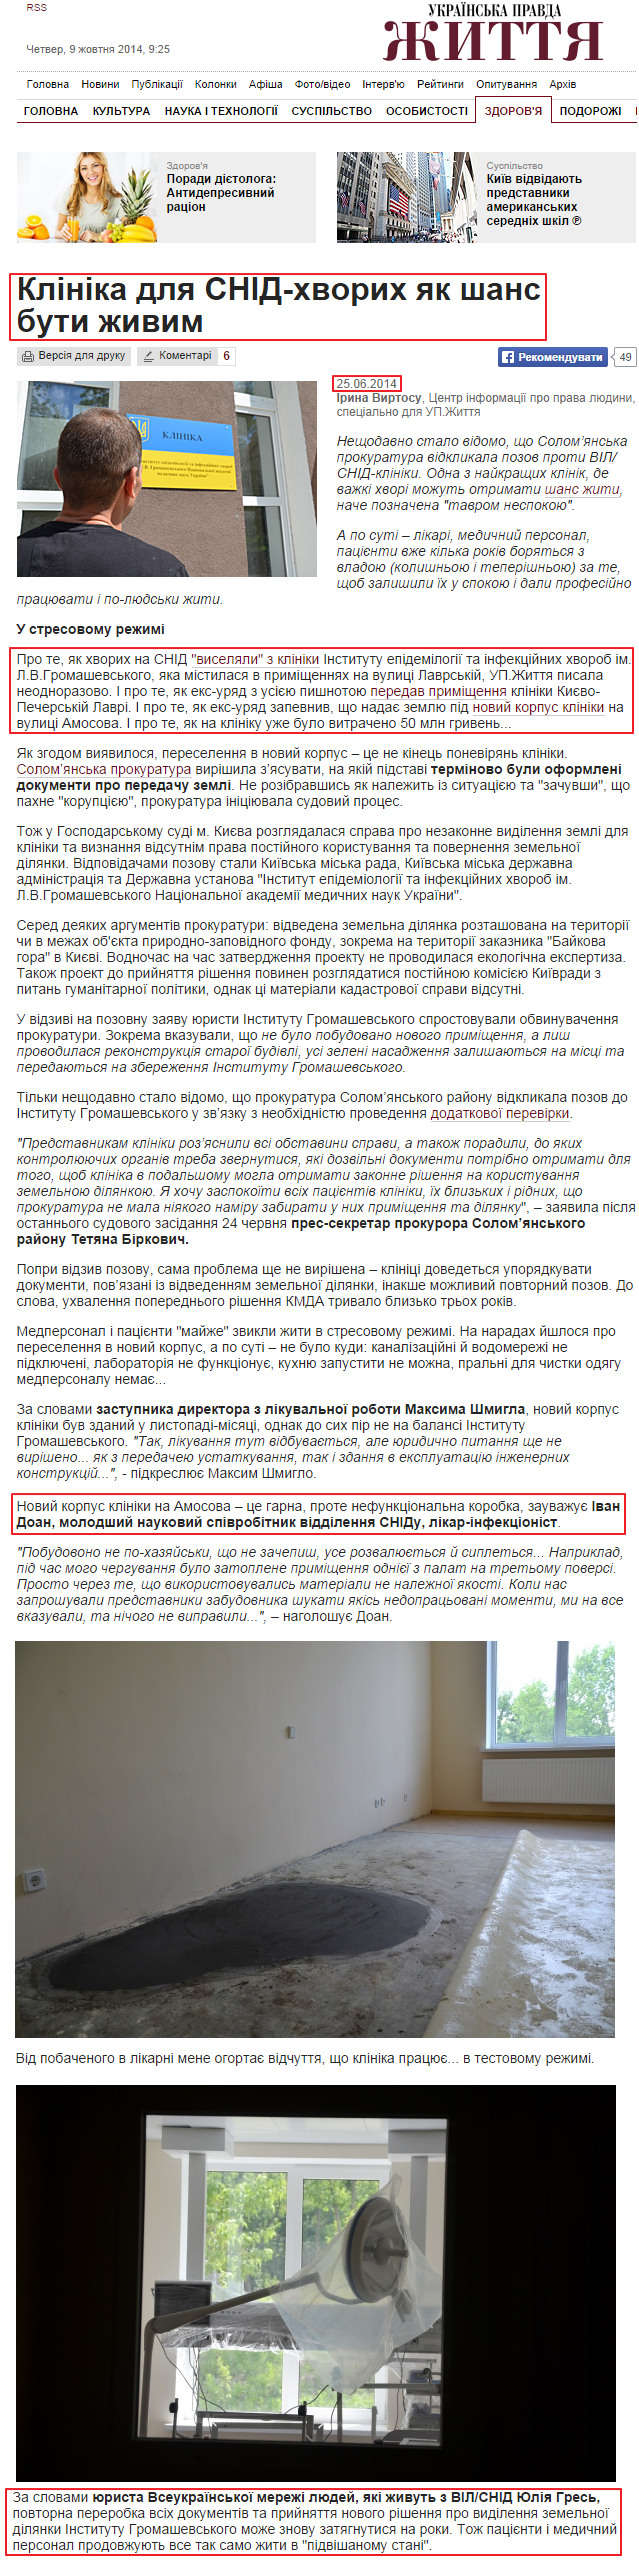 http://life.pravda.com.ua/health/2014/06/25/173154/